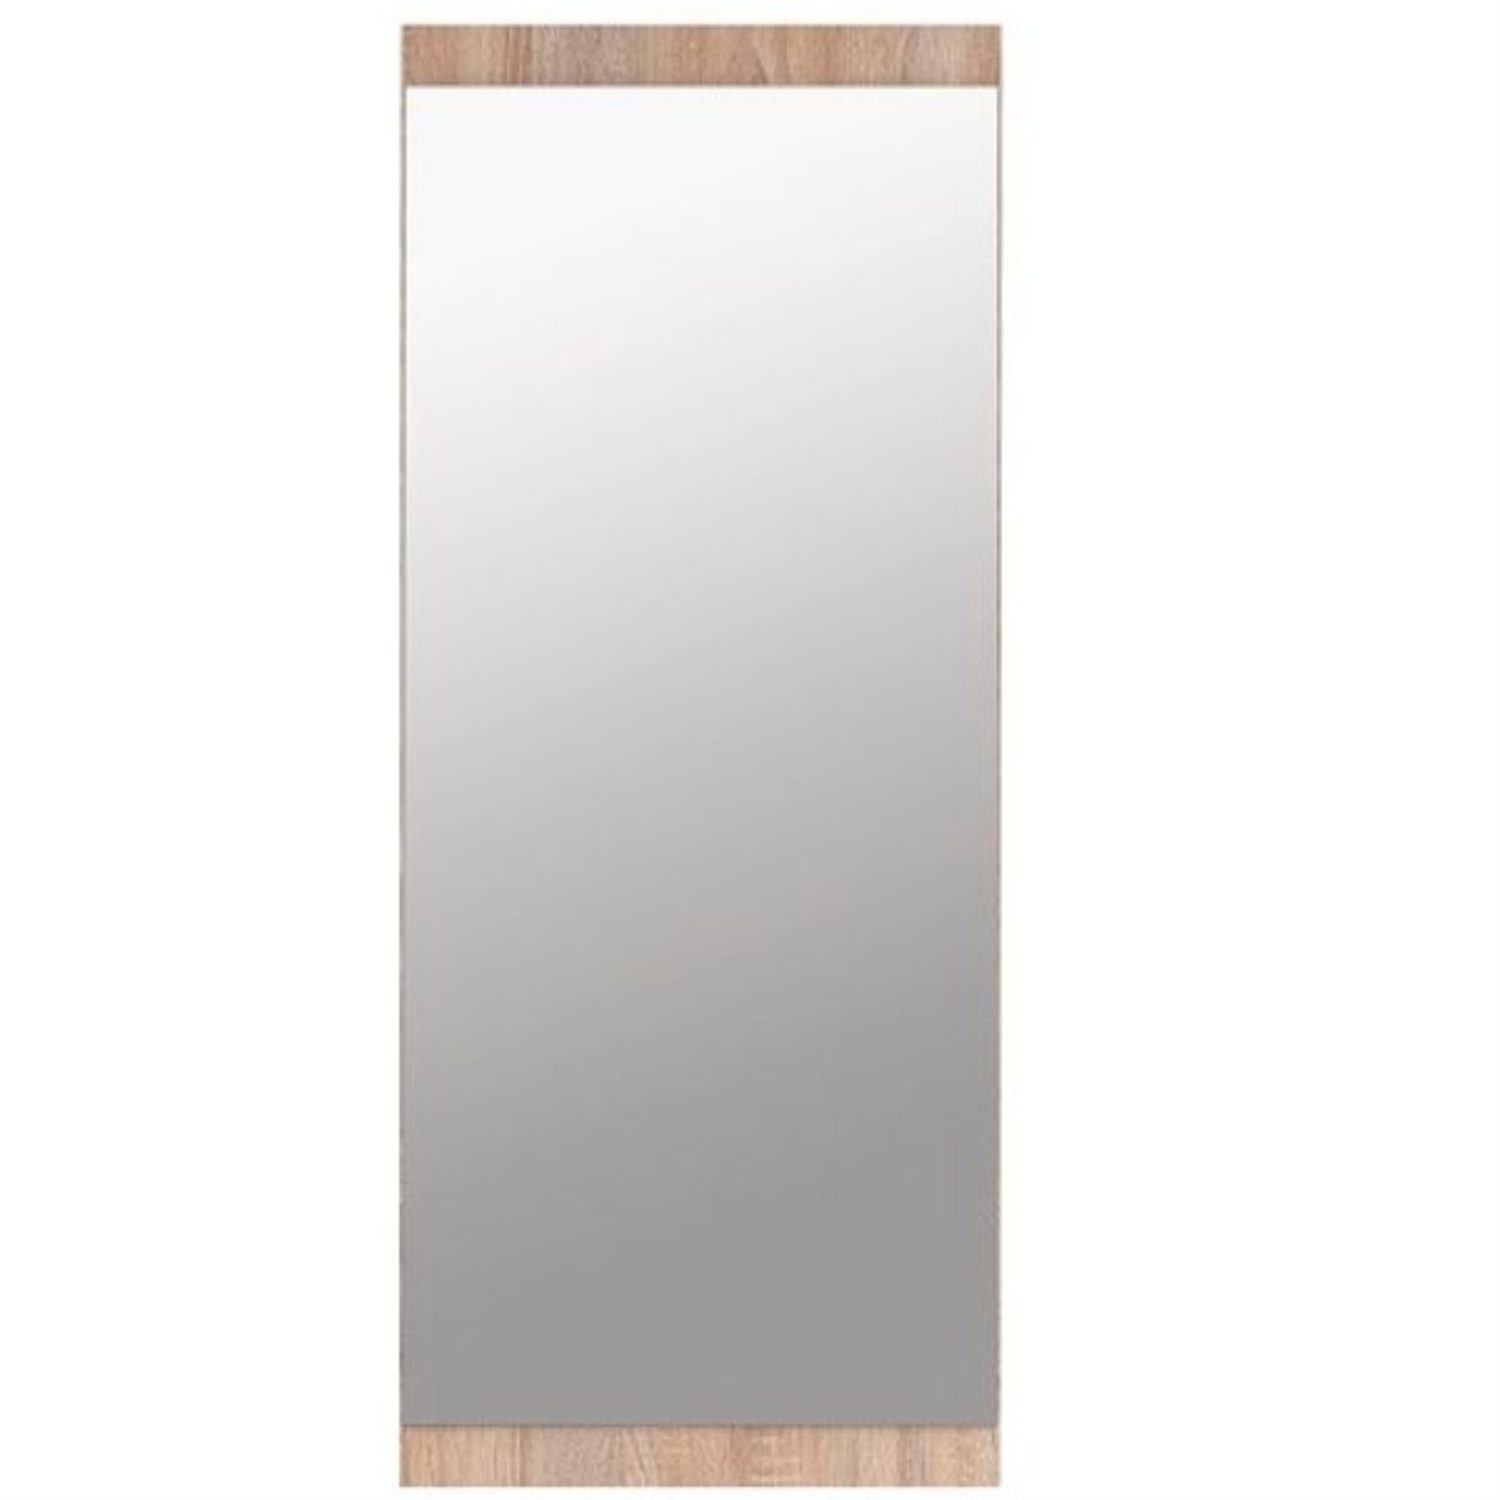 OKL Spiegelschrank Wandspiegel Spiegel wandhängend "Nolte" Sonoma